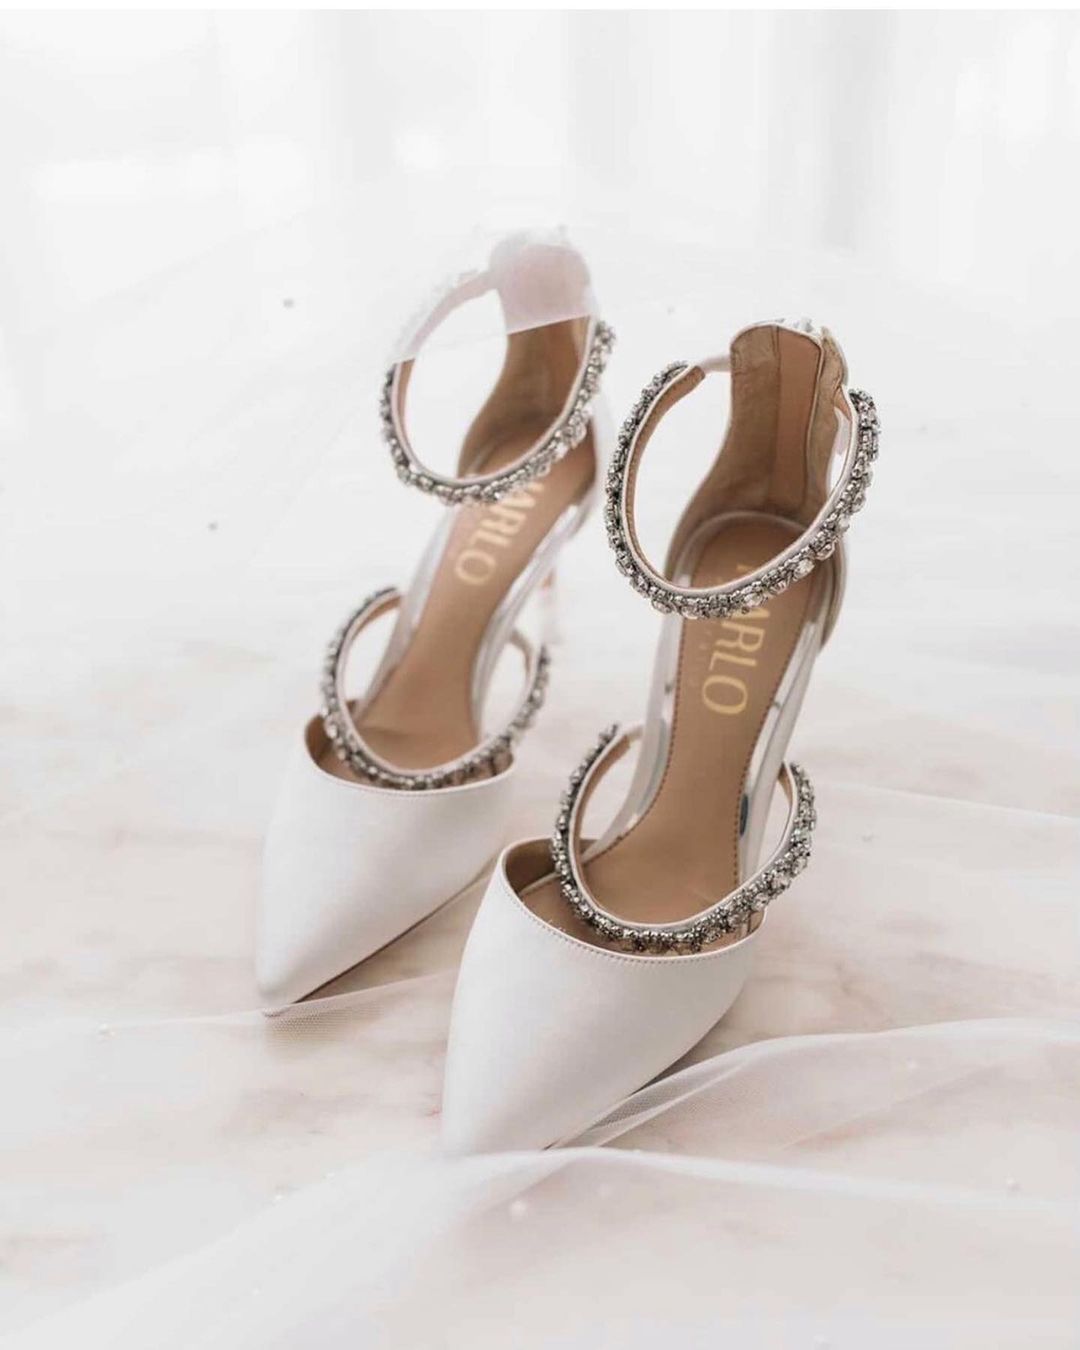 winter wedding shoes heels